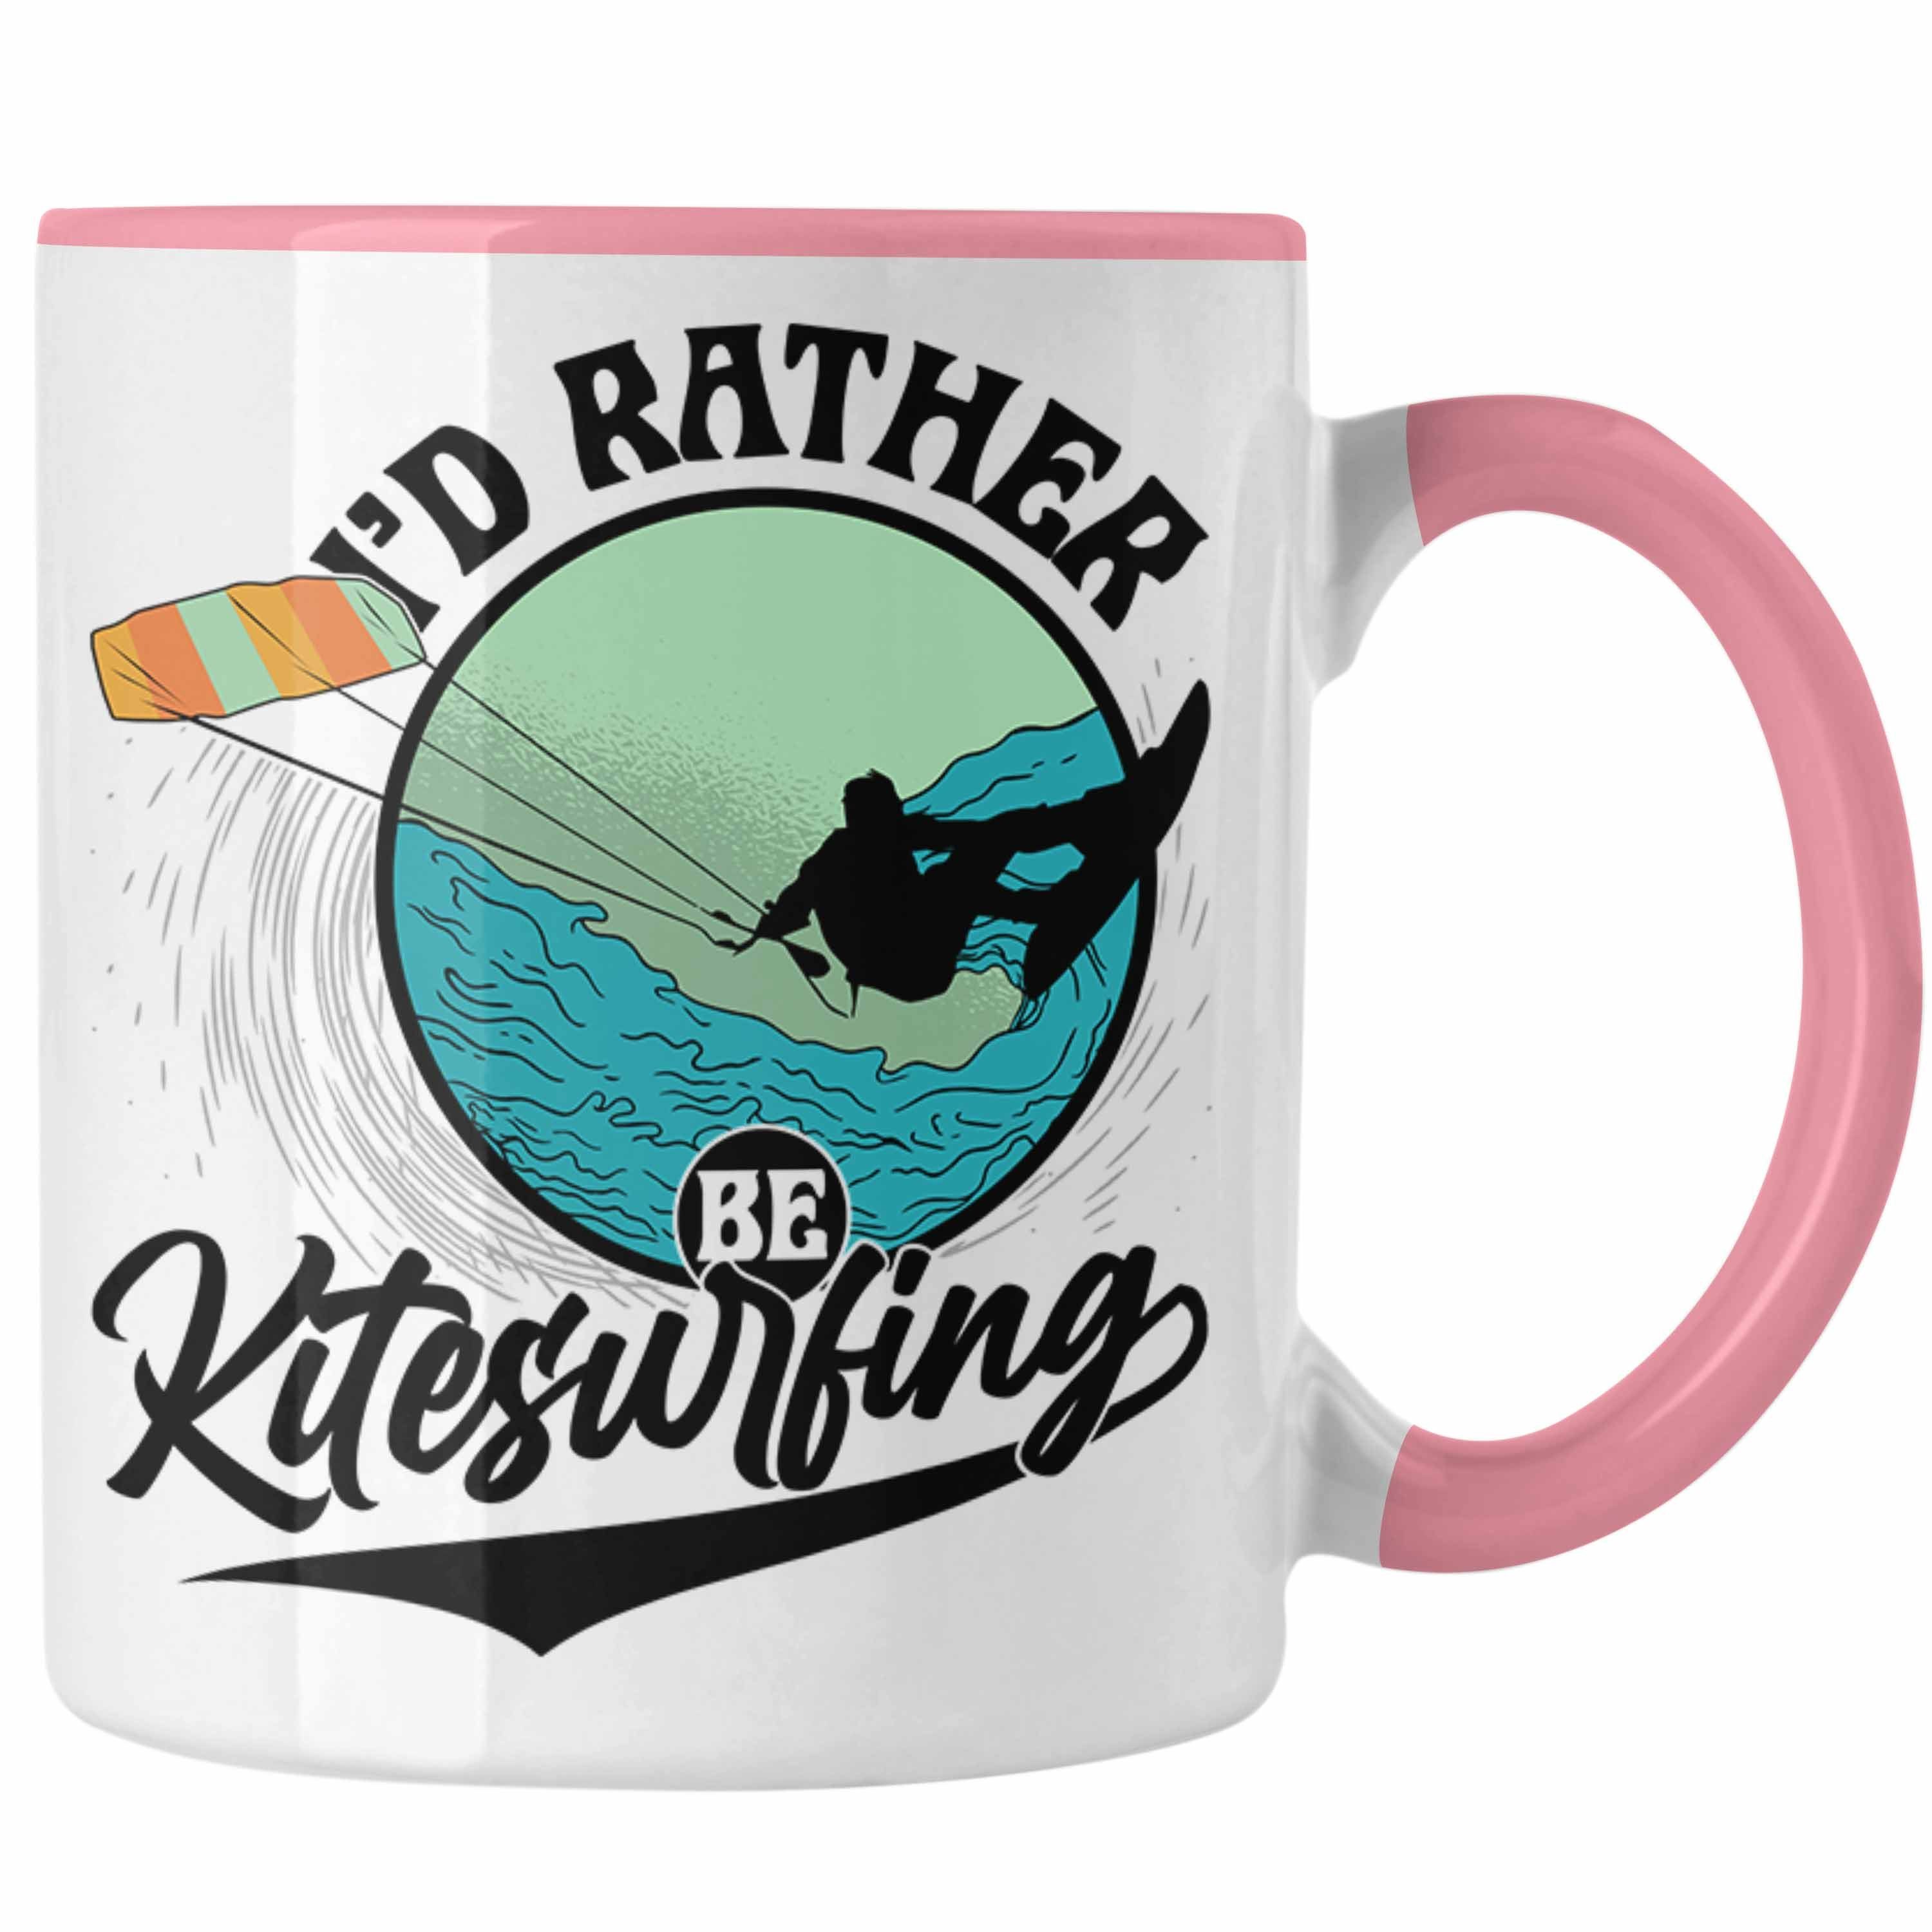 Trendation Tasse Kitesurfing Tasse Geschenk Geschenkidee Rosa Rather für K I'd Be Kitesurfer